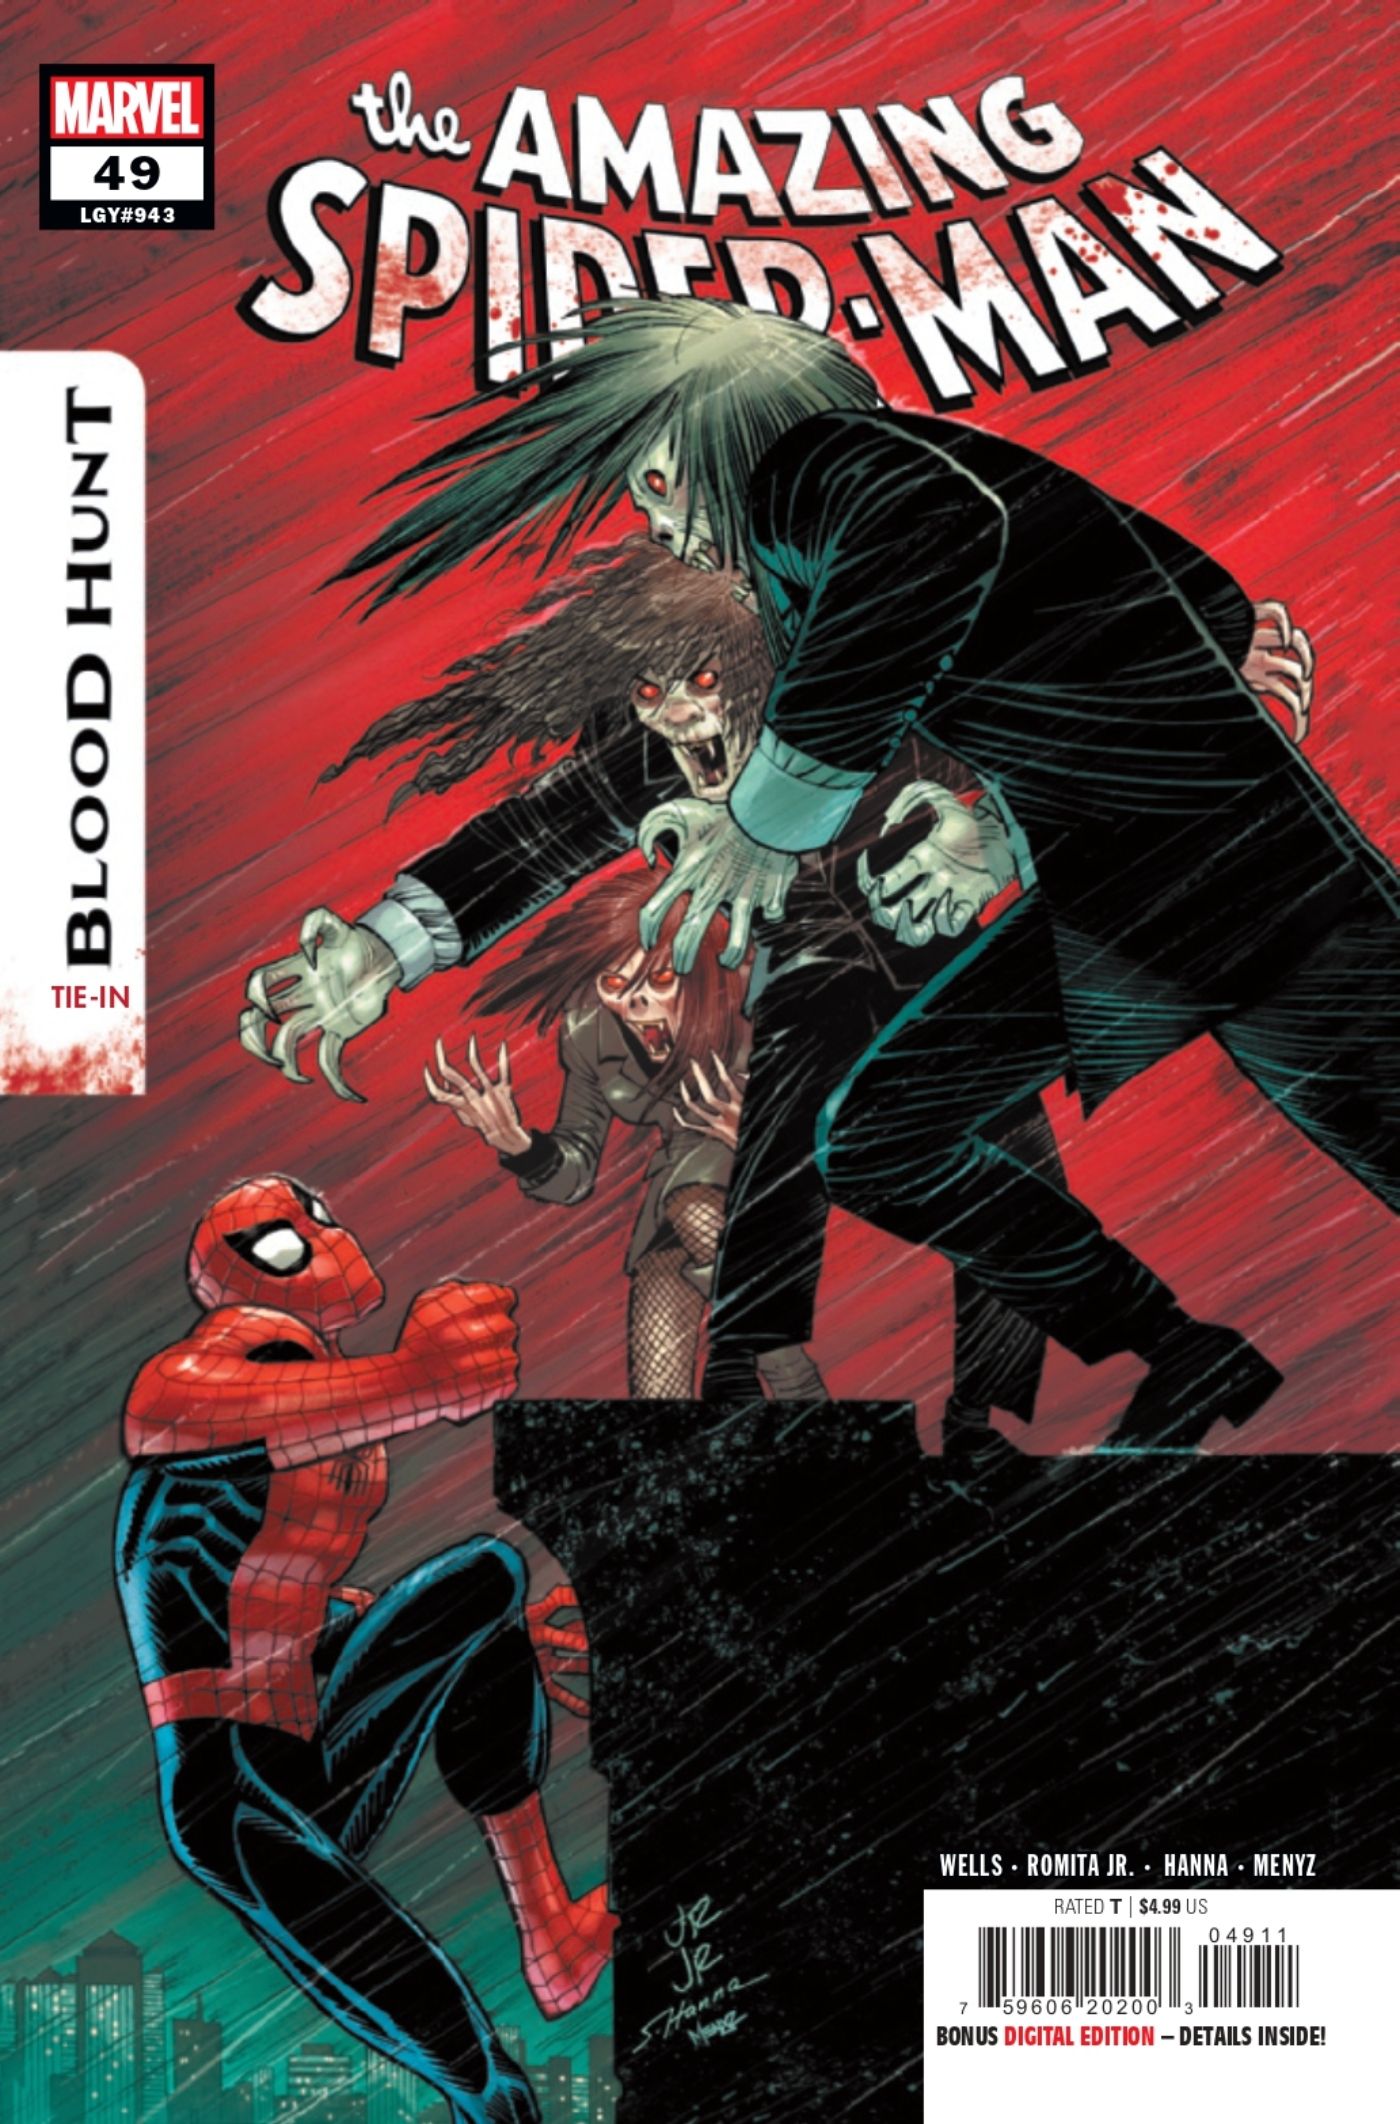 Capa de The Amazing Spider-Man #49 apresentando o Homem-Aranha lutando contra vampiros.